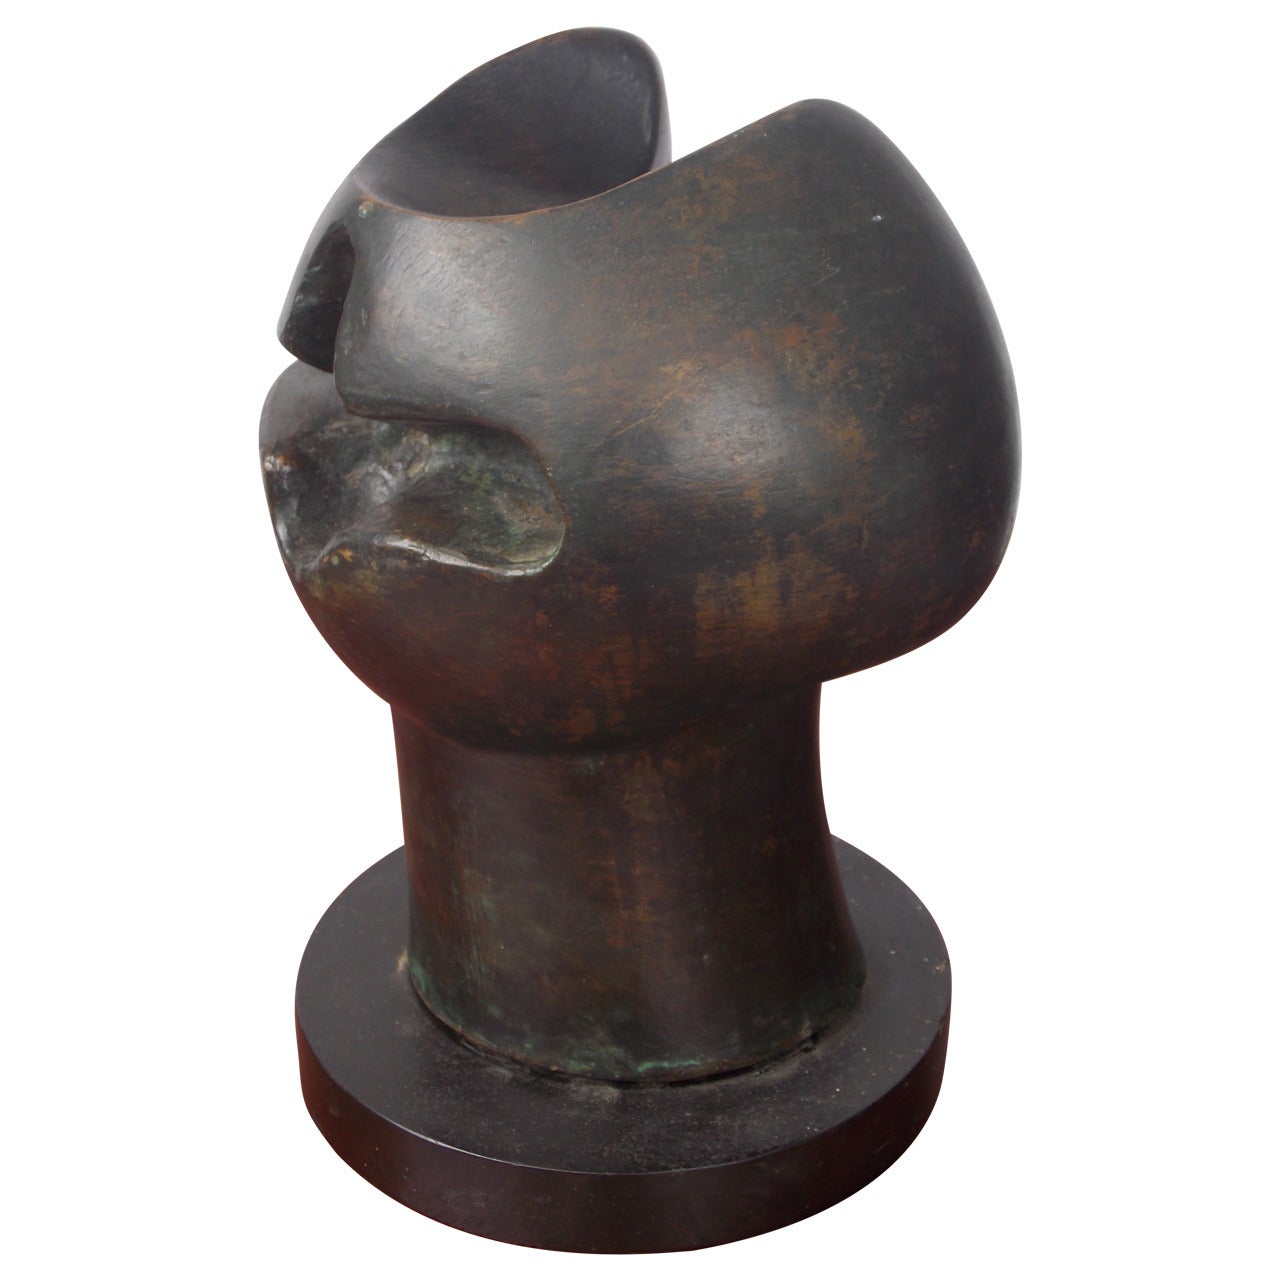 Vintage Modern Art Bronze Sculpture Titled "Goblet Head 1964"